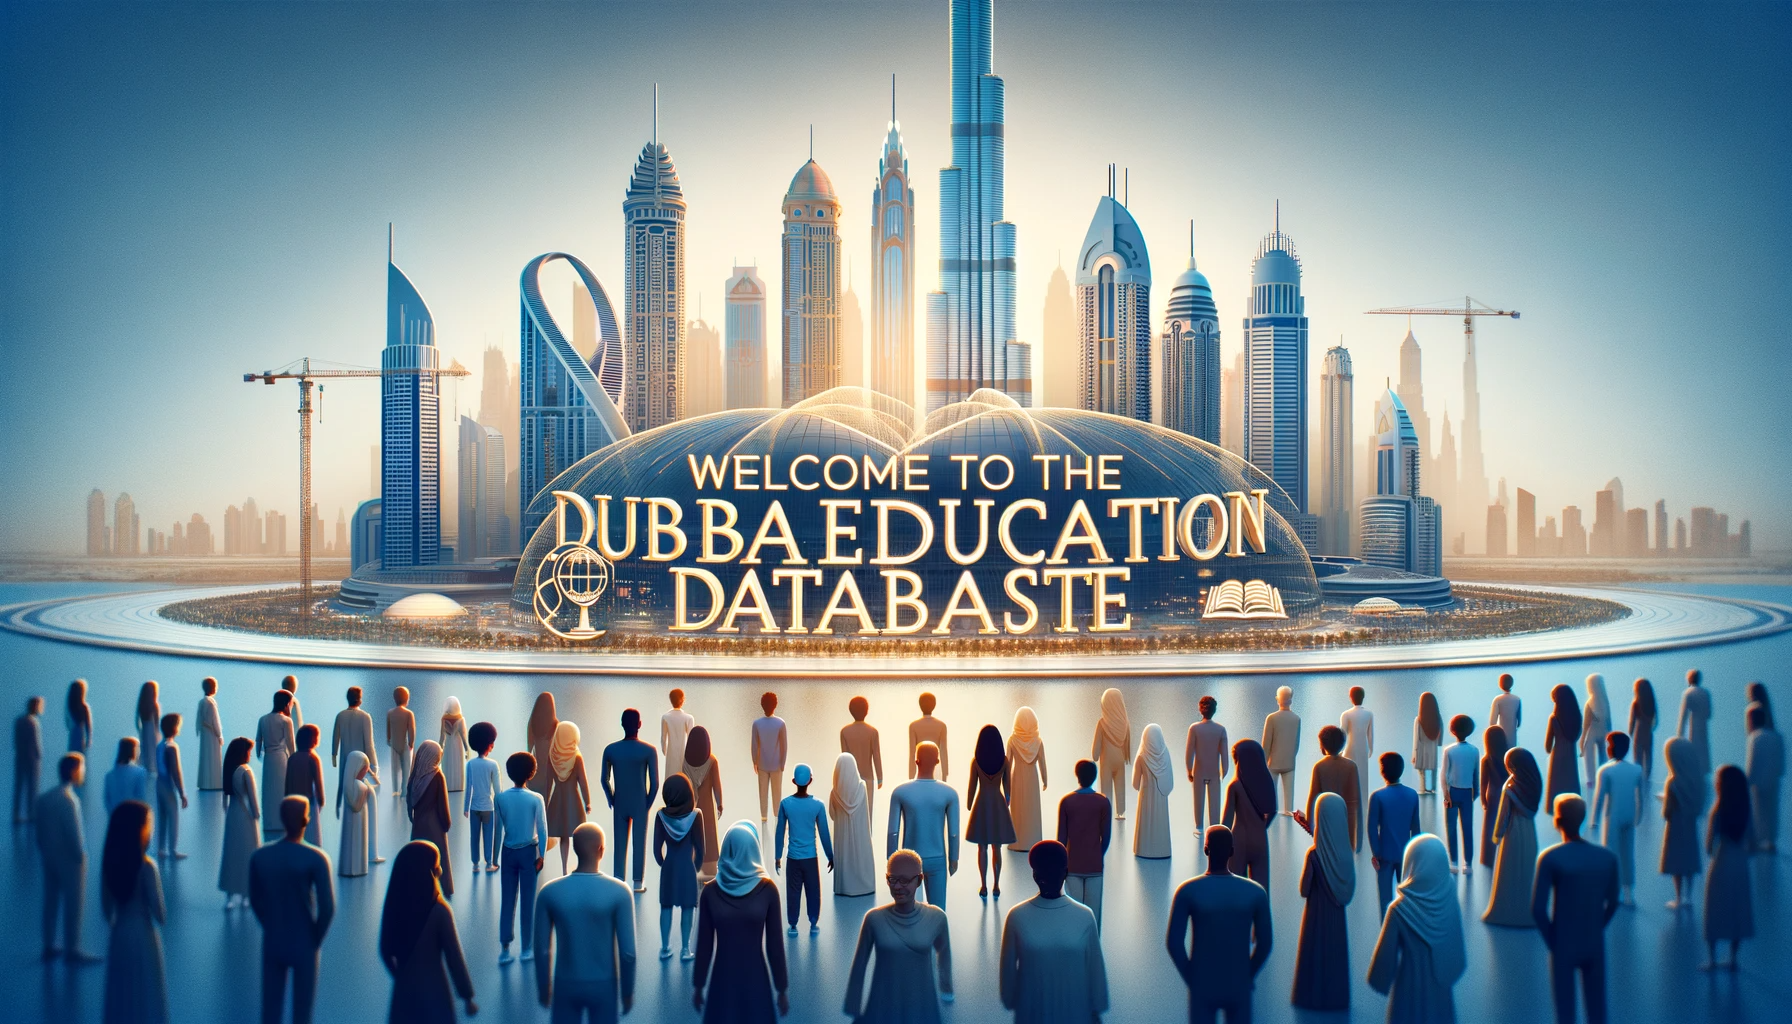 Dubai Education Database